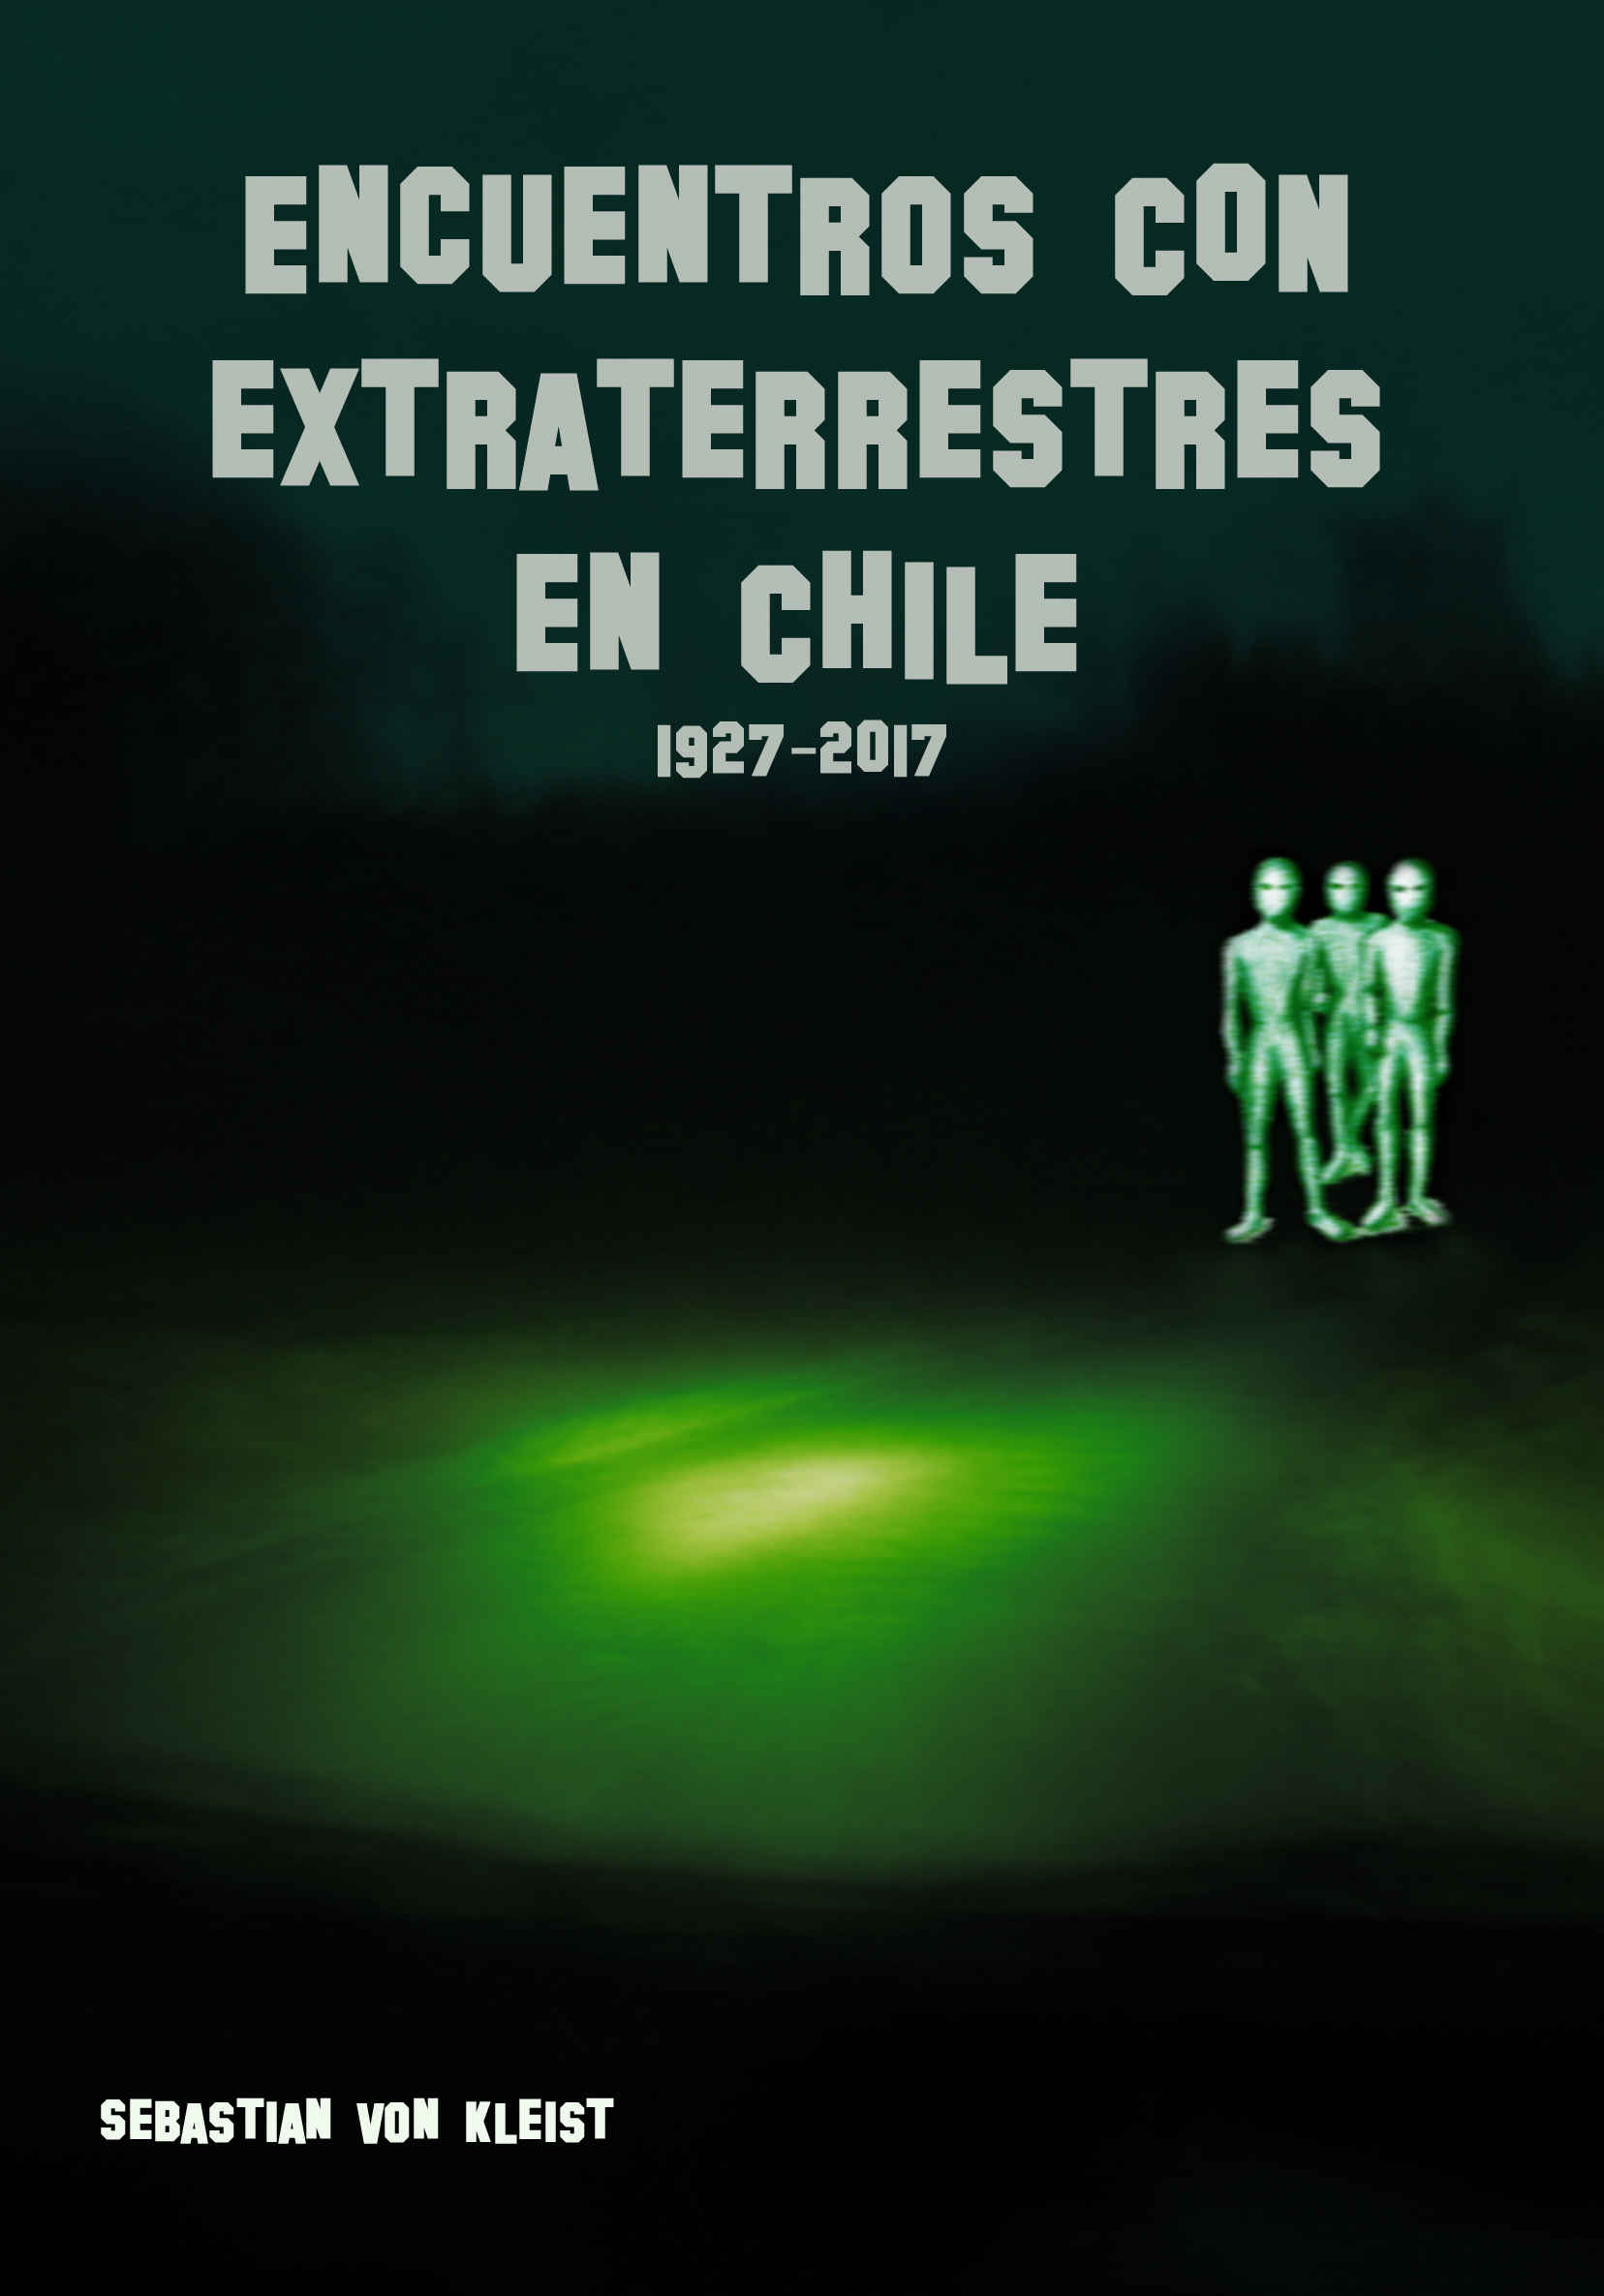 Foto: Portada del librio "Encuentros con Extraterrestres en Chile. /Sebastian von Kleist.